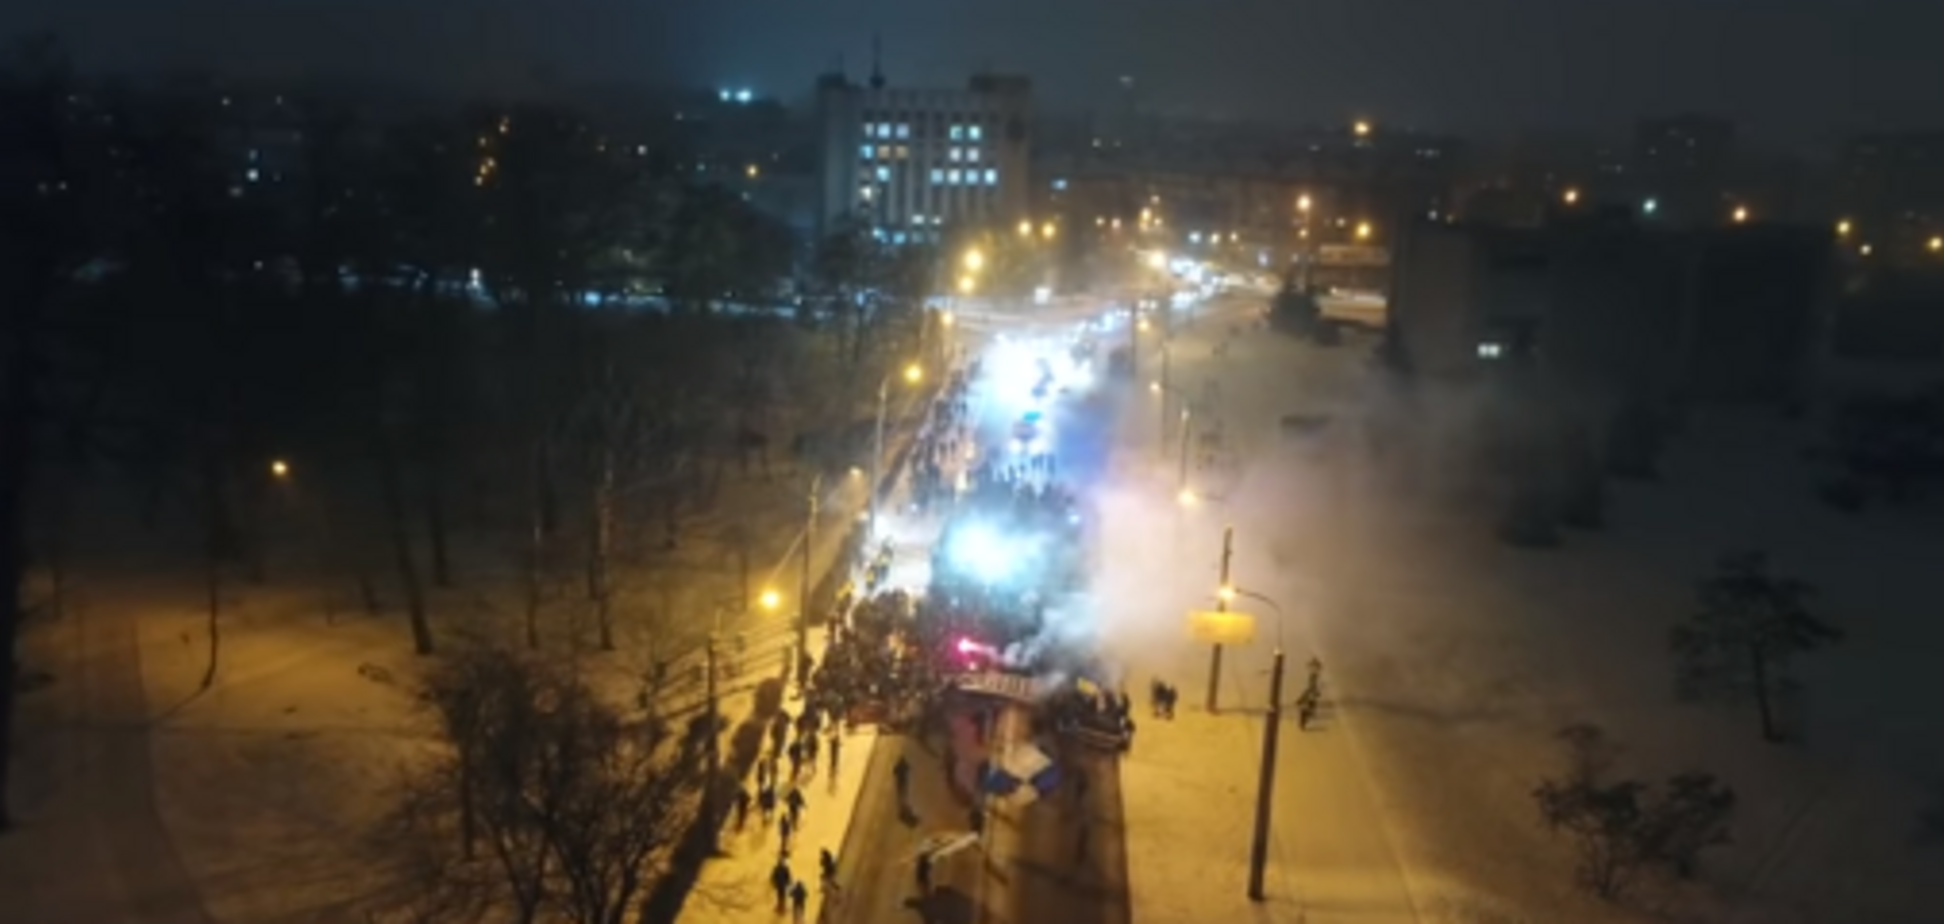 Снежная ловушка для 'Динамо': появилось эффектное видео с дрона на матче Кубка Украины